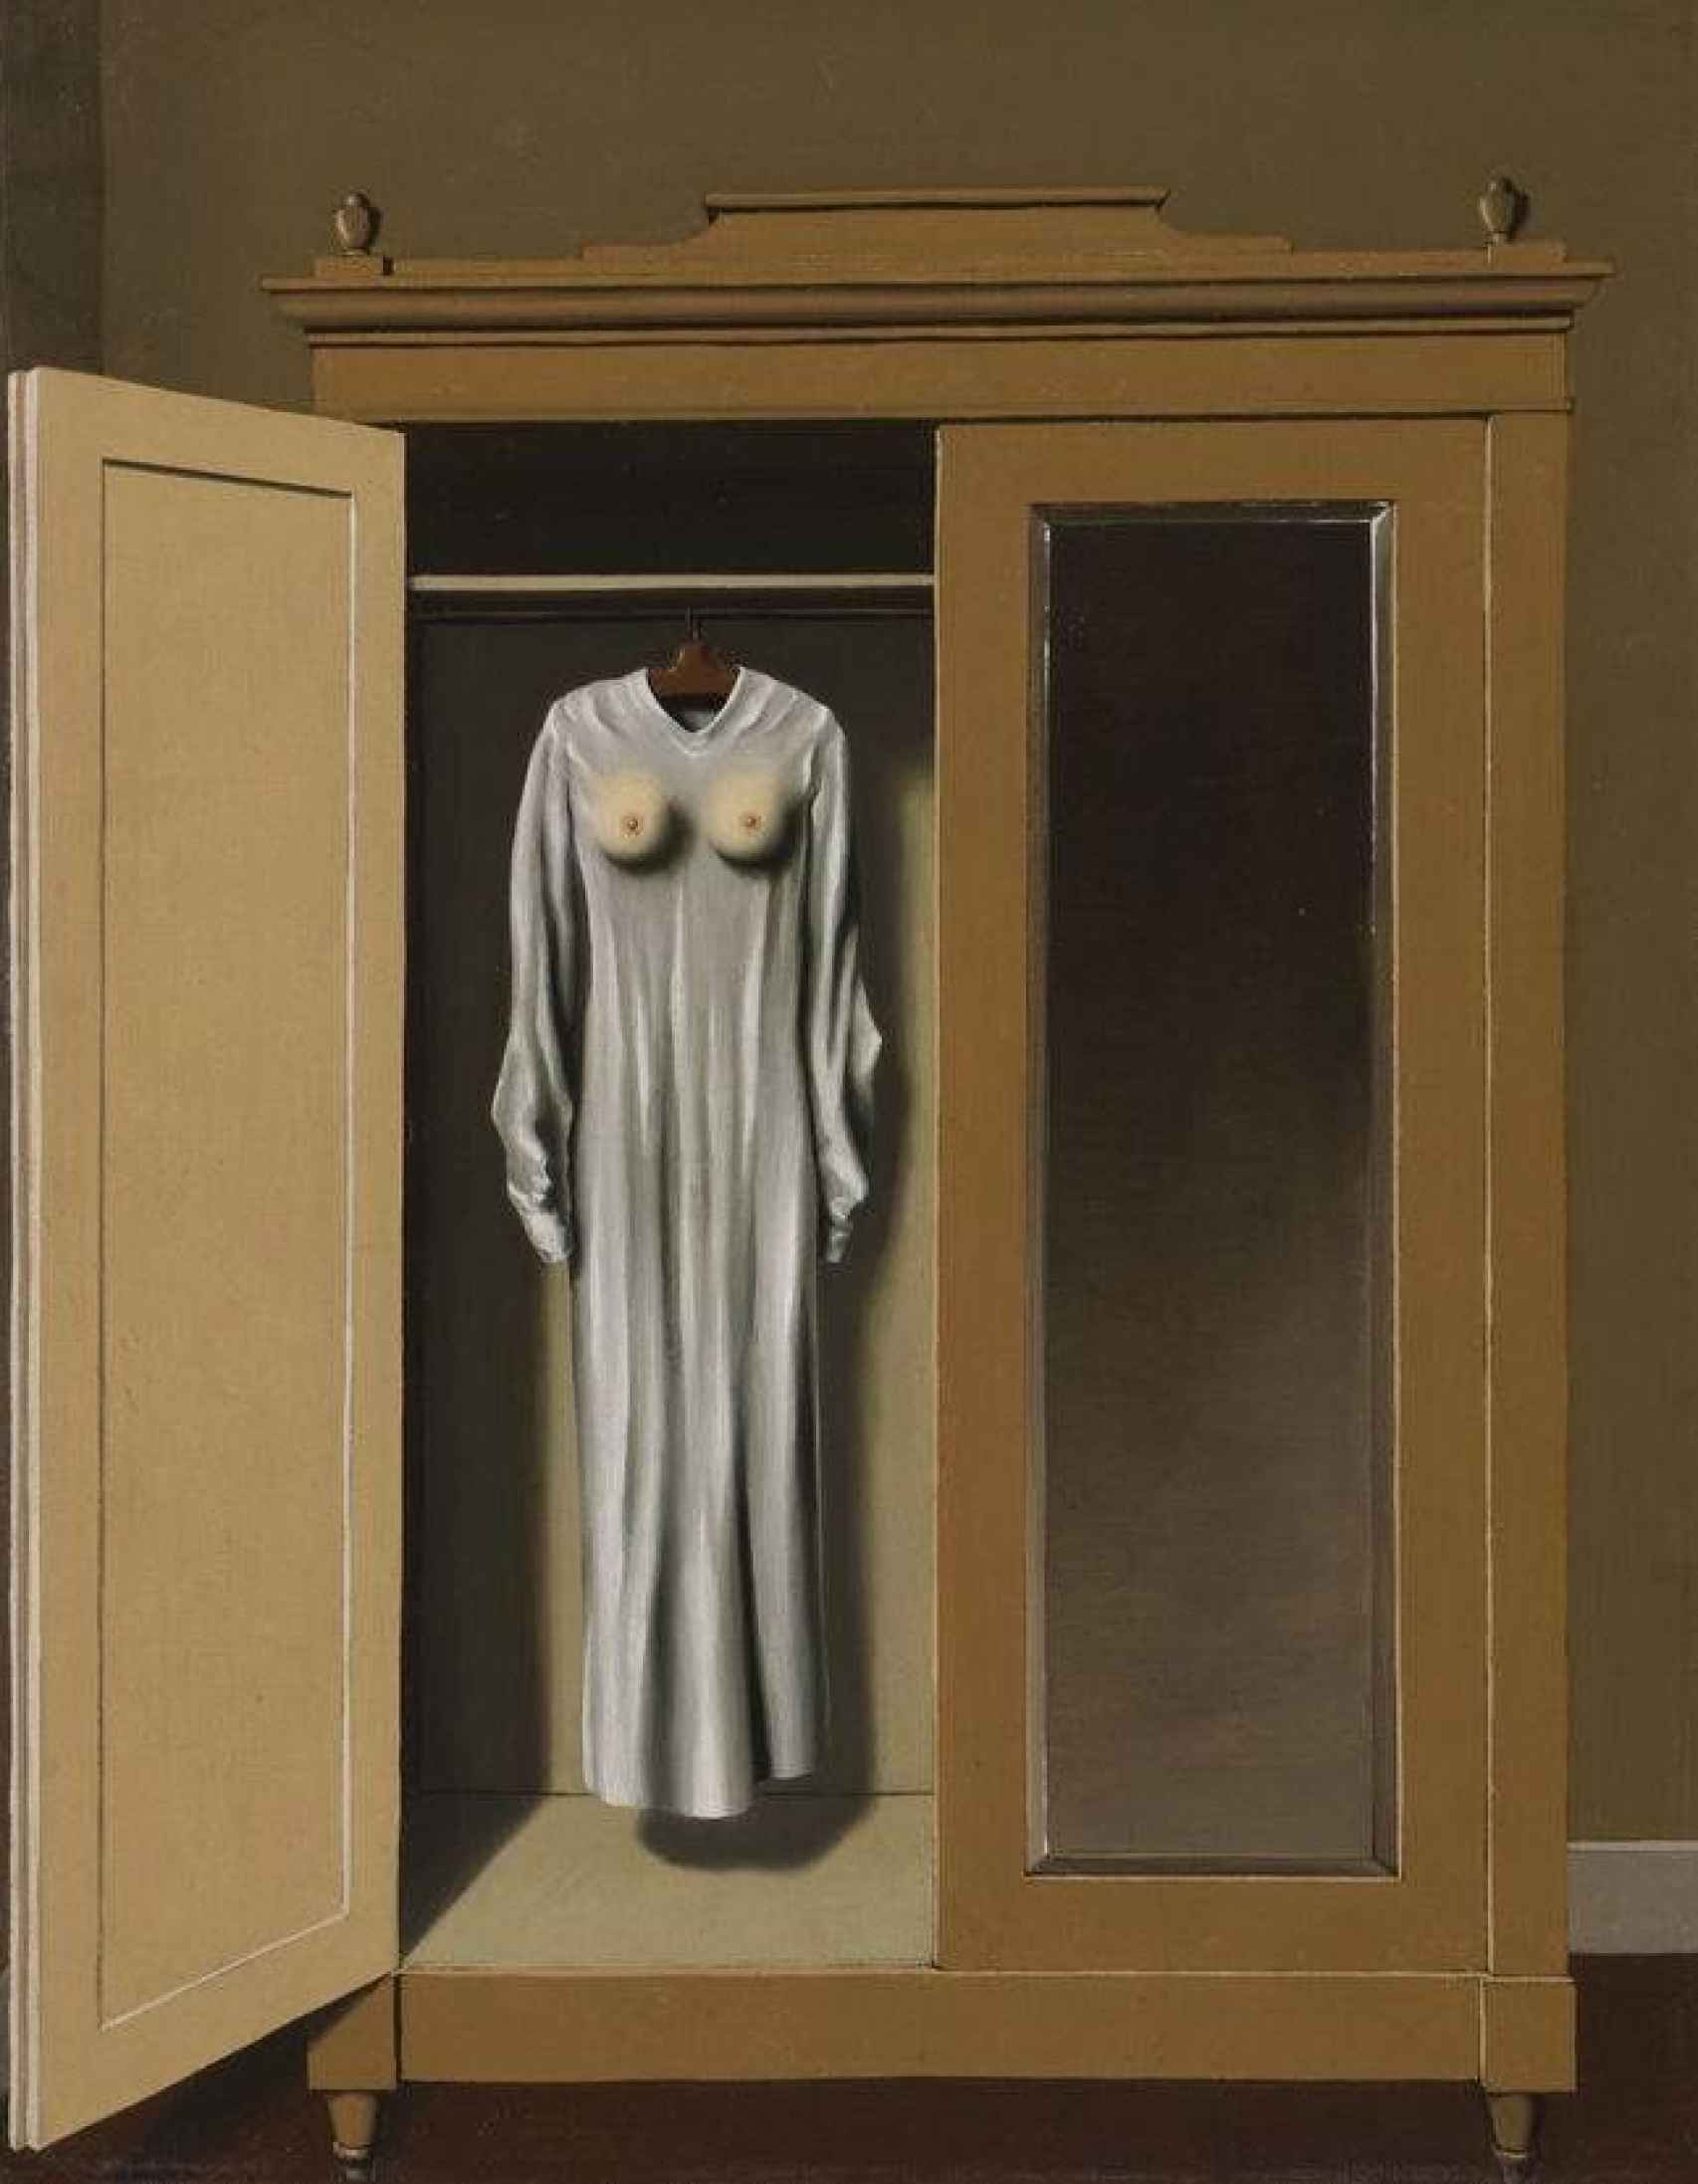 'In memoriam Mack Sennett', by René Magritte.